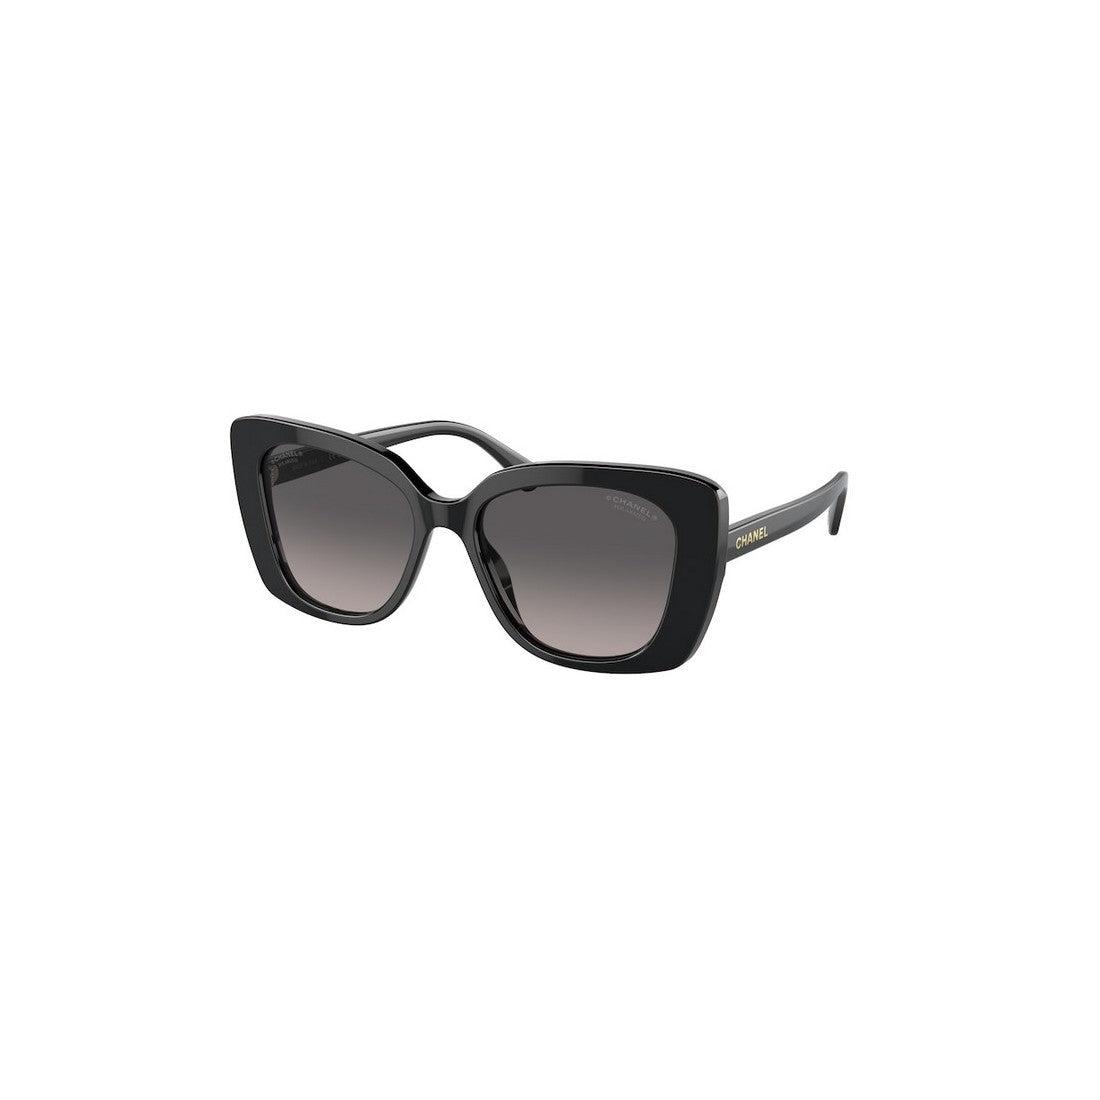 Sunglasses CHANEL CH5504 C622/M3 53-17 Black in stock, Price 300,00 €